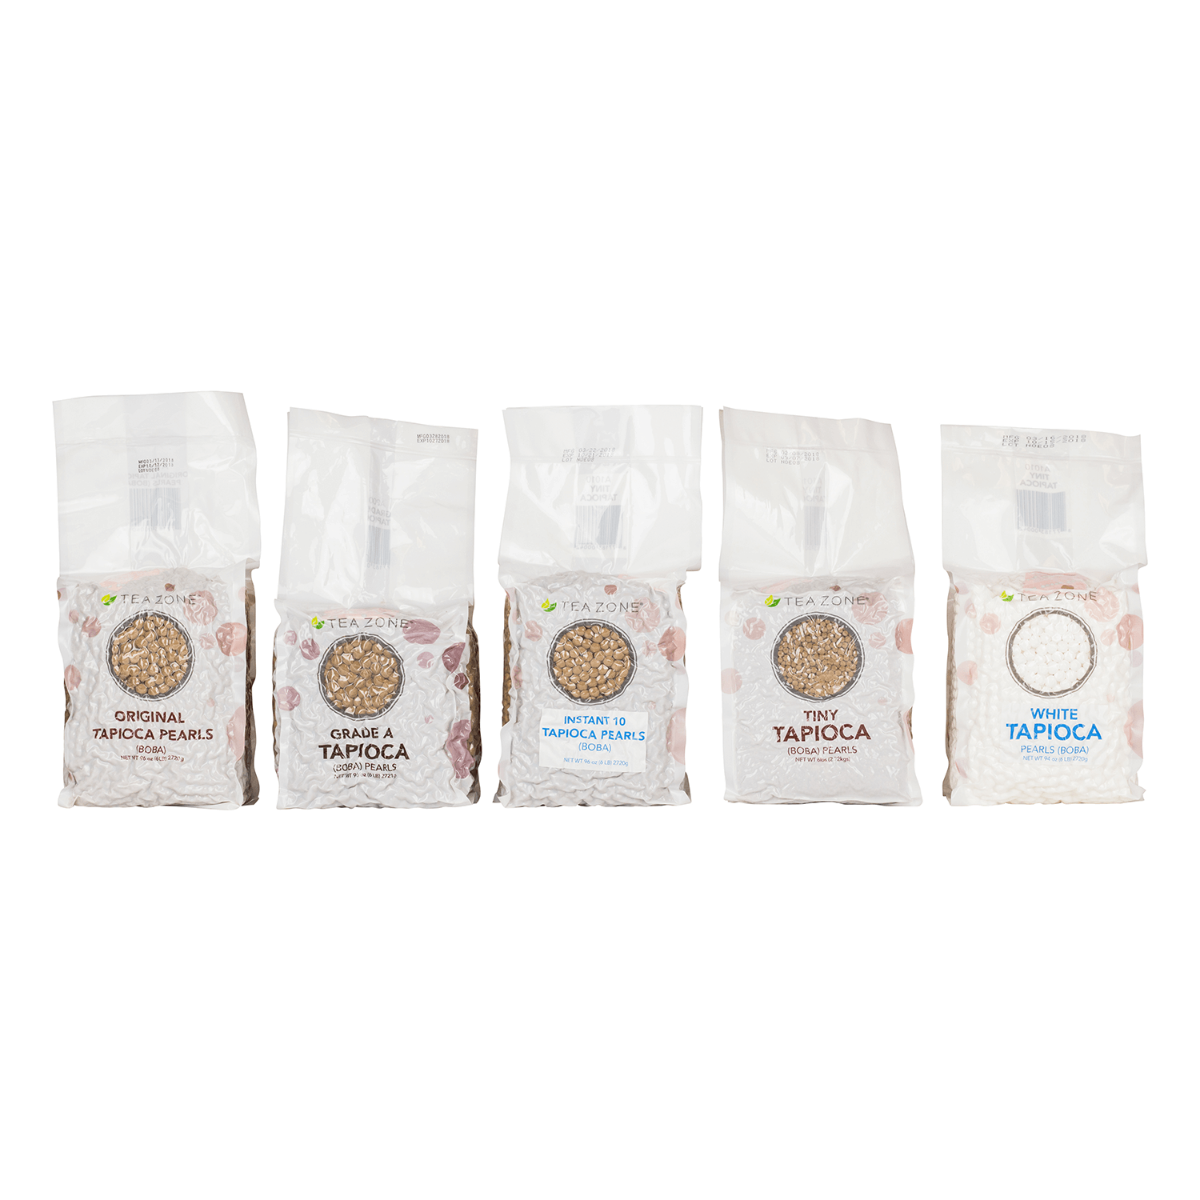 Tea Zone Original Tapioca - Case (6 bags)